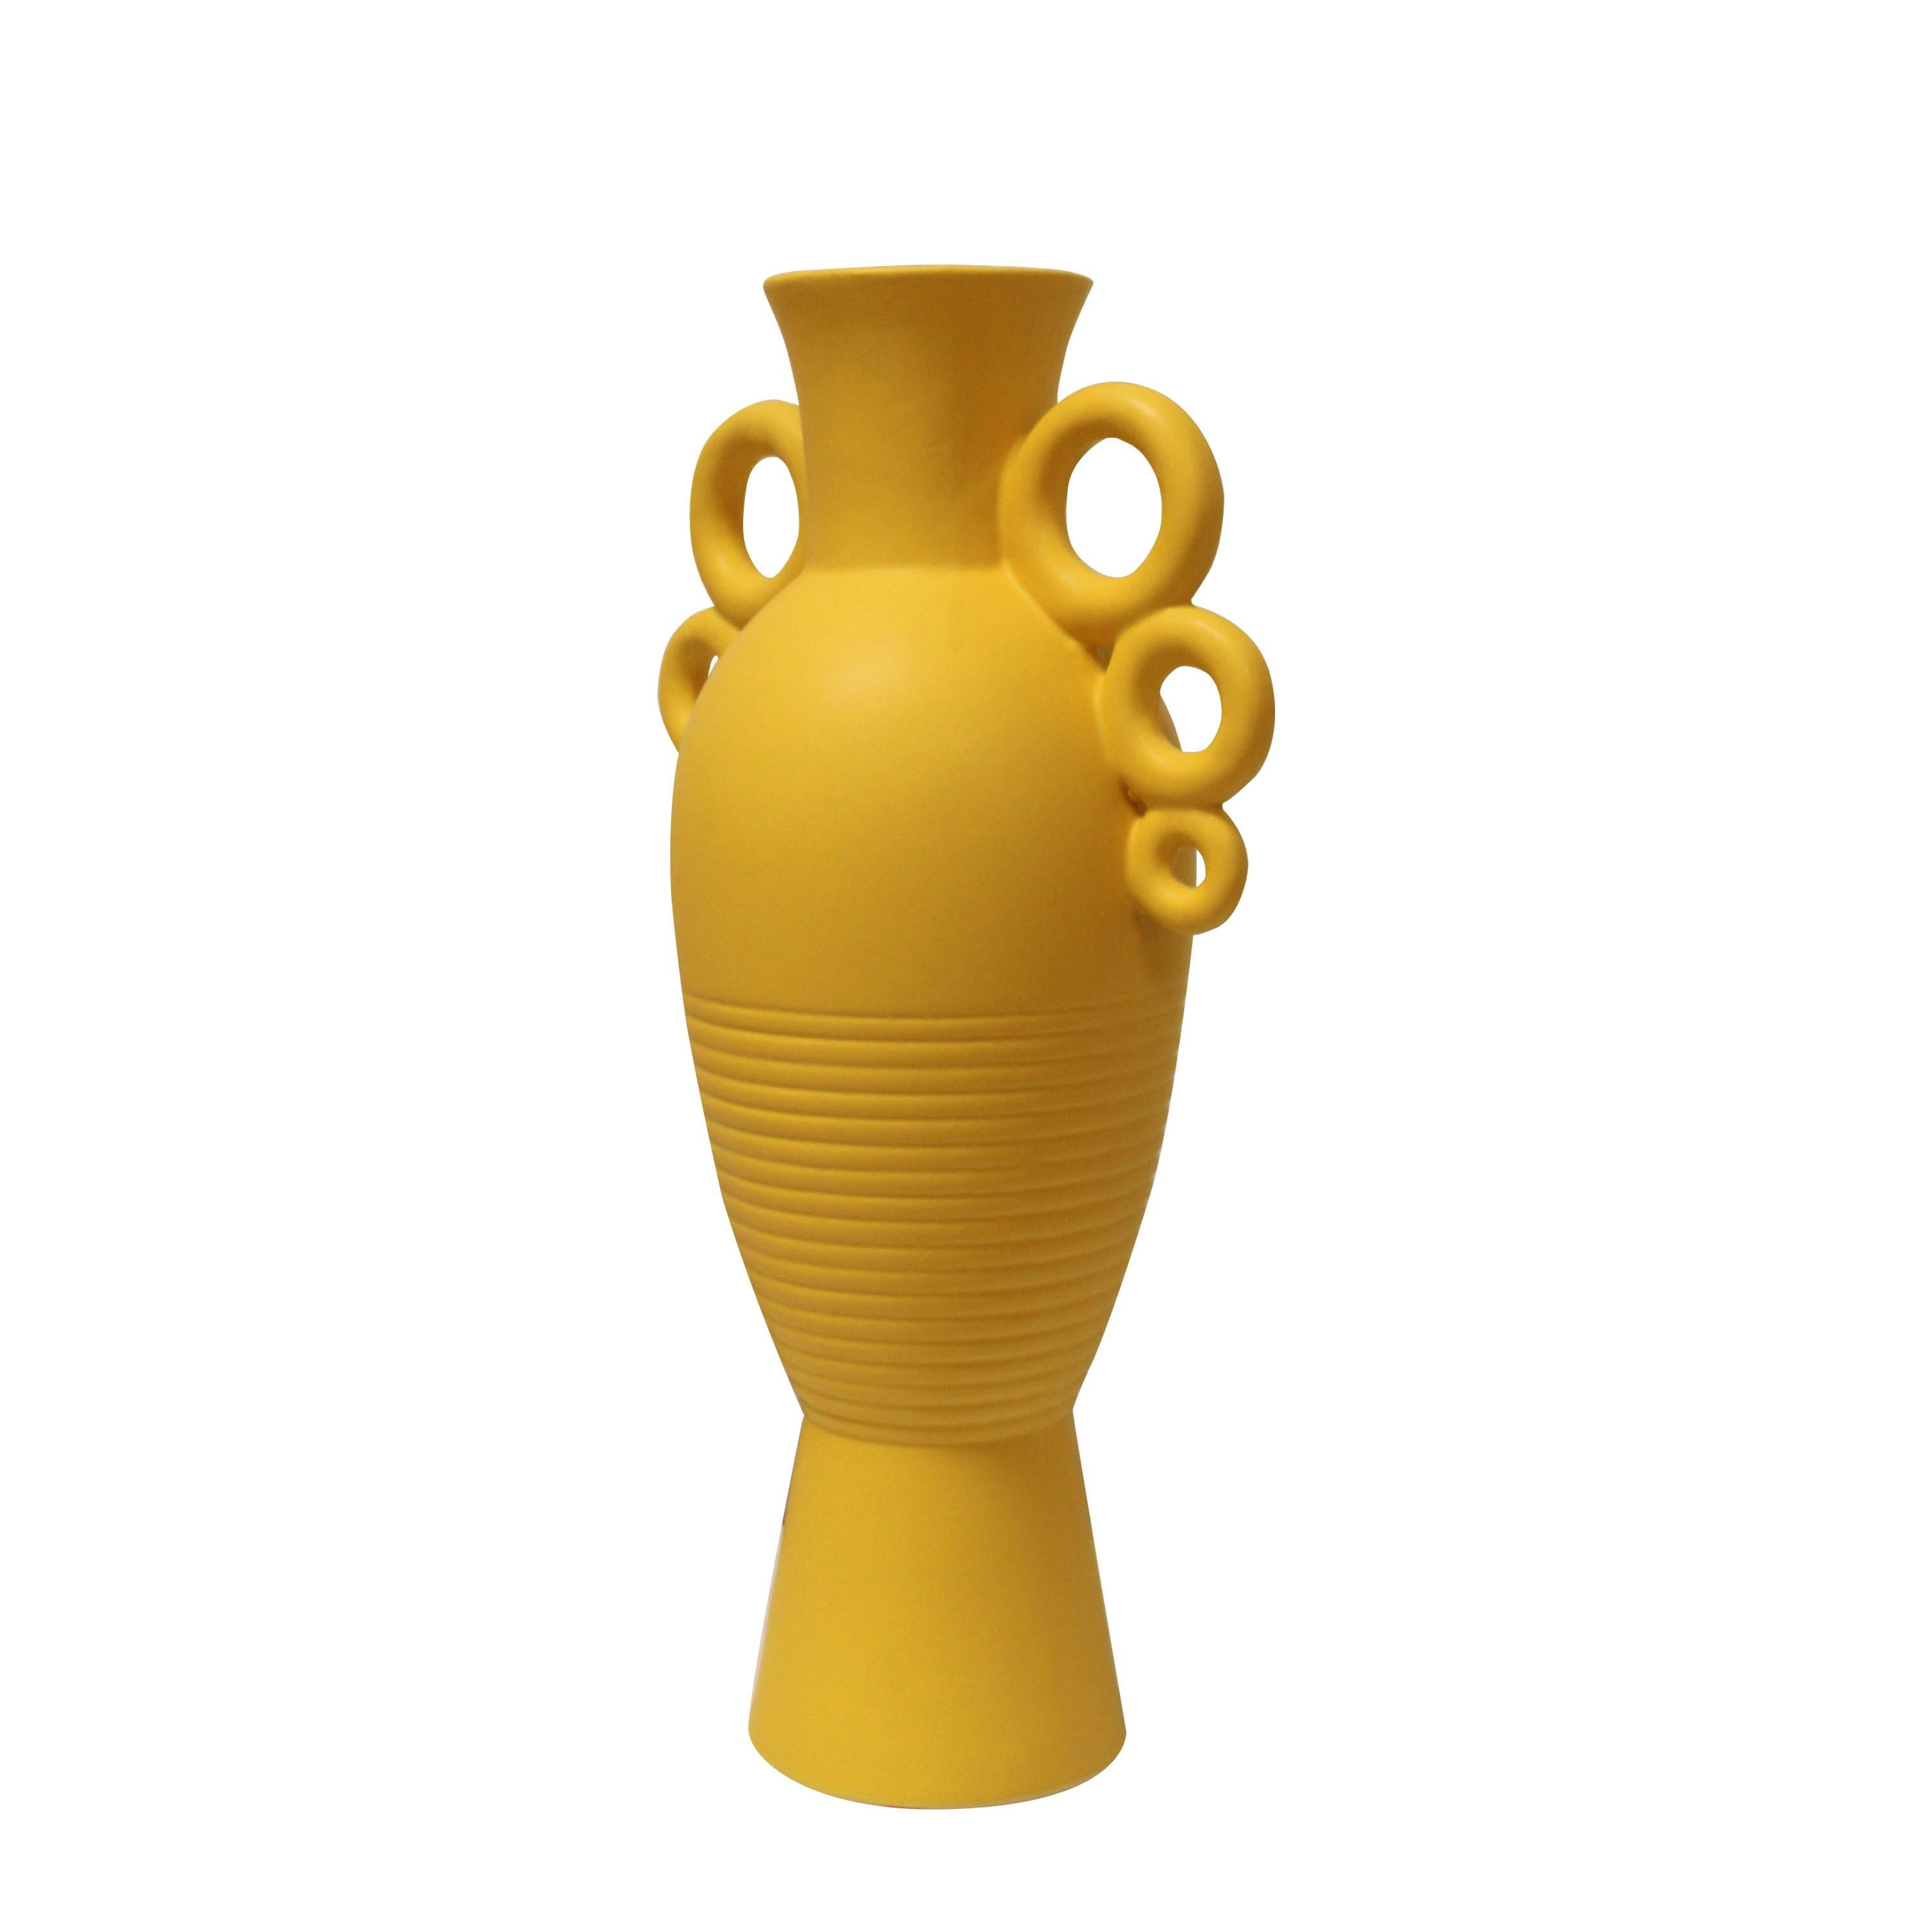 Vase italien en céramique avec un corps de forme balustre et un col cylindrique peint en Yelloew. Le vase est doté de deux anses composées de trois anneaux de céramique reliés entre eux et d'un décor de lignes gravées.